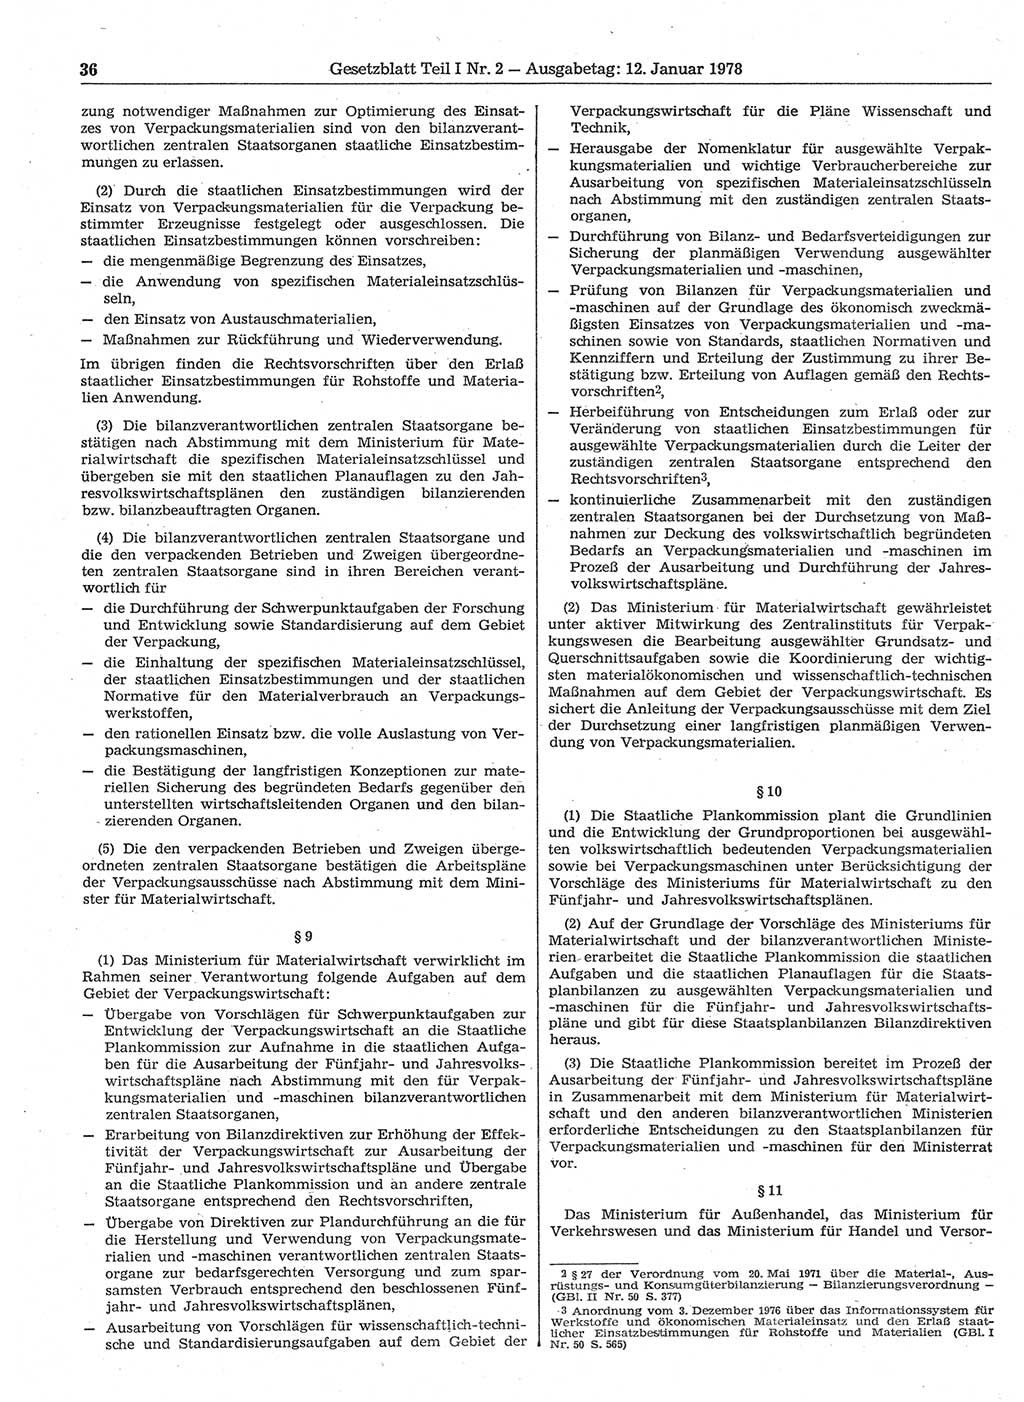 Gesetzblatt (GBl.) der Deutschen Demokratischen Republik (DDR) Teil Ⅰ 1978, Seite 36 (GBl. DDR Ⅰ 1978, S. 36)